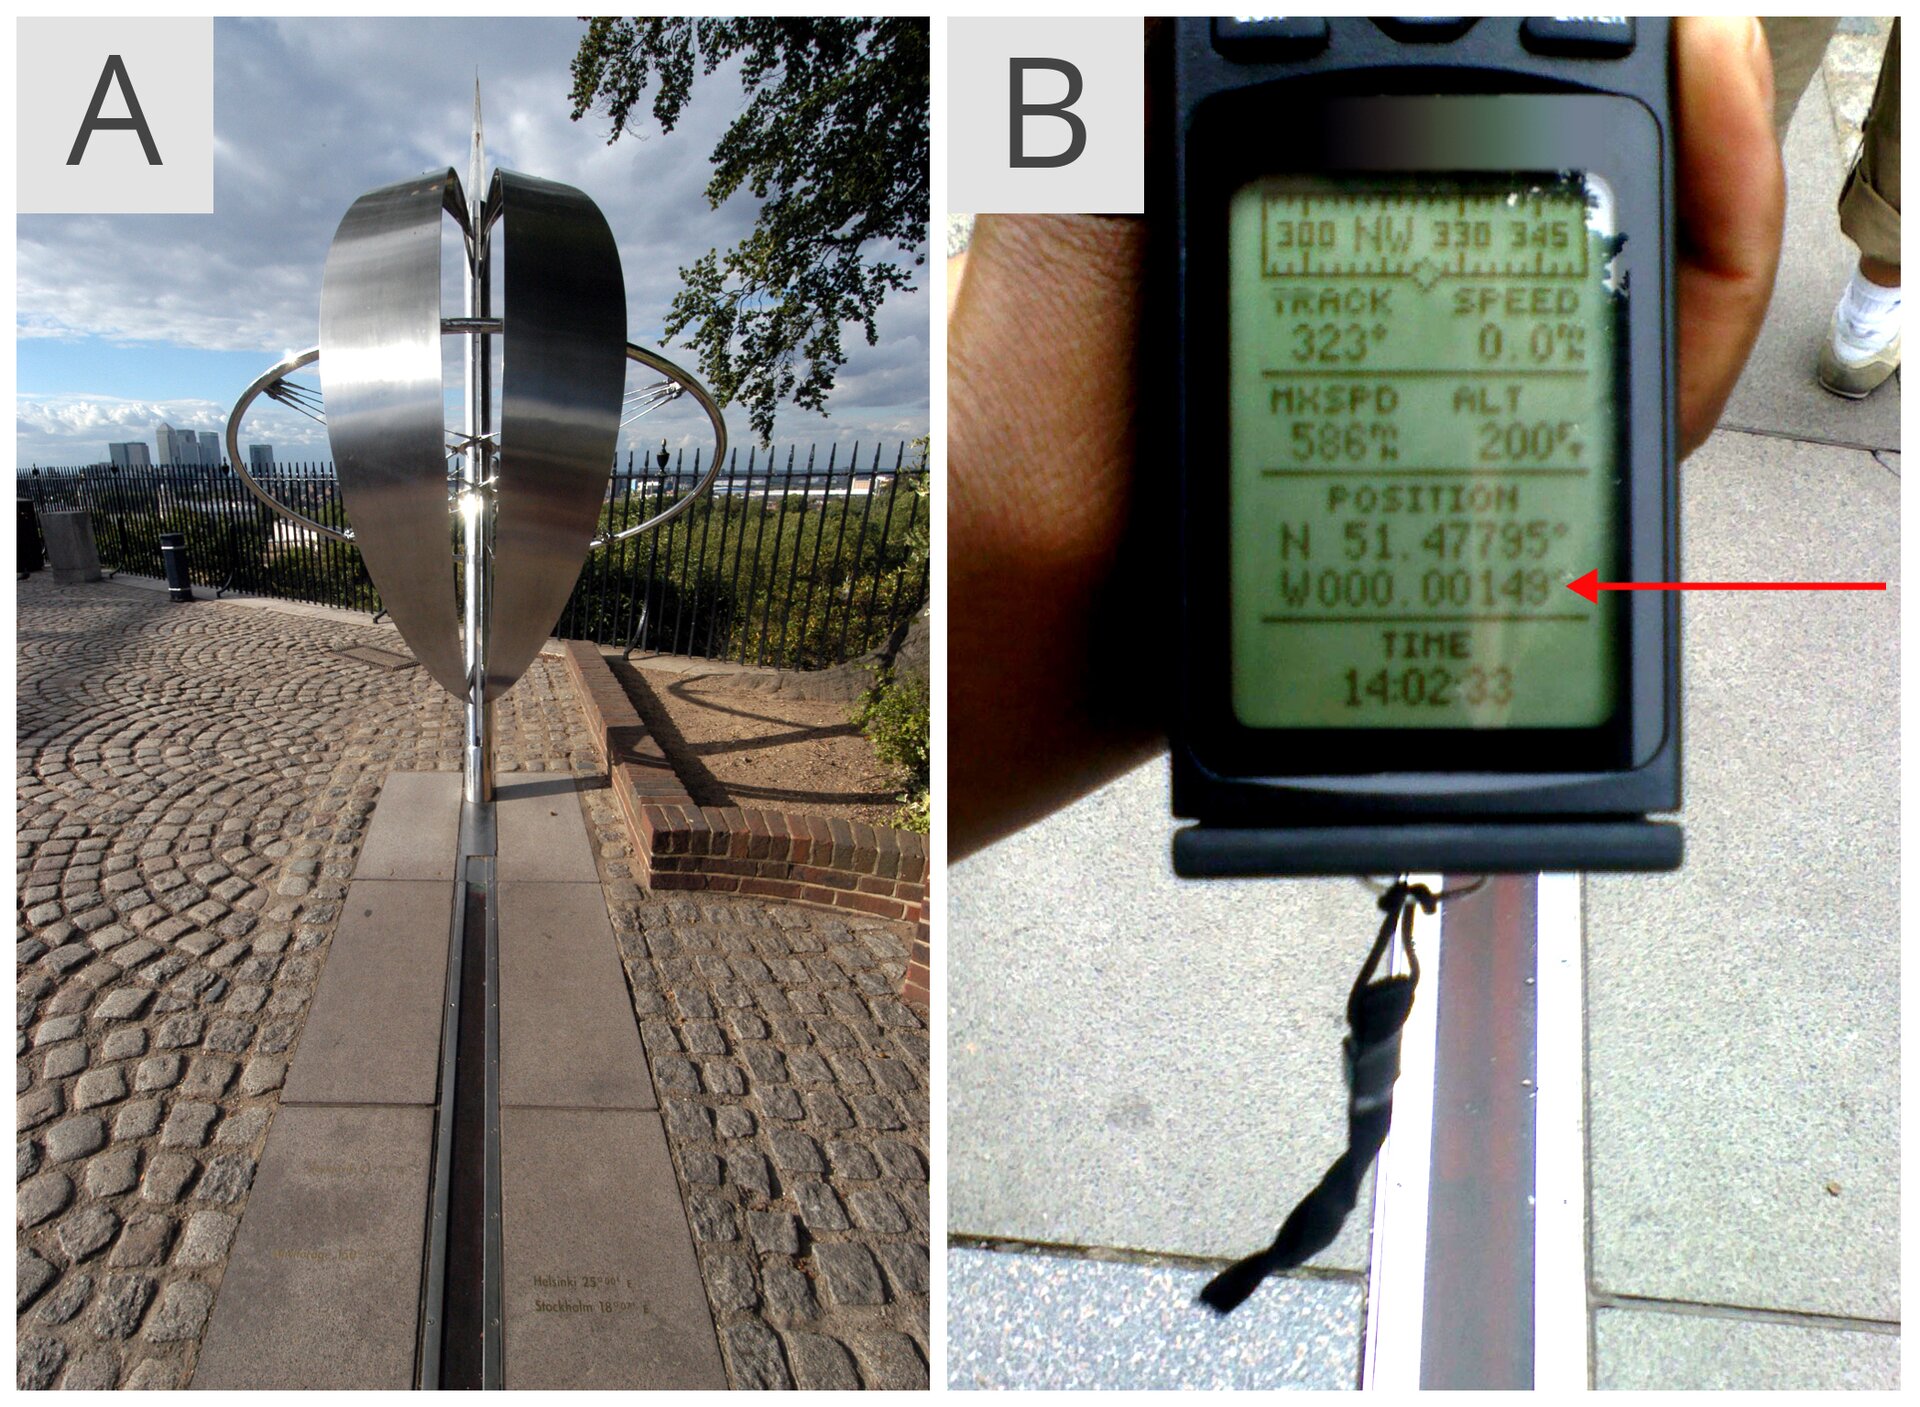 Zdjęcie A ilustruje wykonany z metalu pomnik południka zerowego w Greenwich. W pionie znajdują się dwa półokręgi umiejscowione równolegle do siebie. Za półkręgami widać metalowy okrąg umieszczony pod kątem prostym do półokręgów. Całość zamocowana jest na metalowej cienkiej rurze. Zdjęcie B przedstawia odbiornik GPS z dużym wyświetlaczem. Czerwona strzałka po prawej stronie wskazuje dokładne położenie nad symbolicznym południkiem zero. I nie jest to dokładnie zero stopni, a sto czterdzieści dziewięć stutysięcznych stopnia długości geograficznej zachodniej.